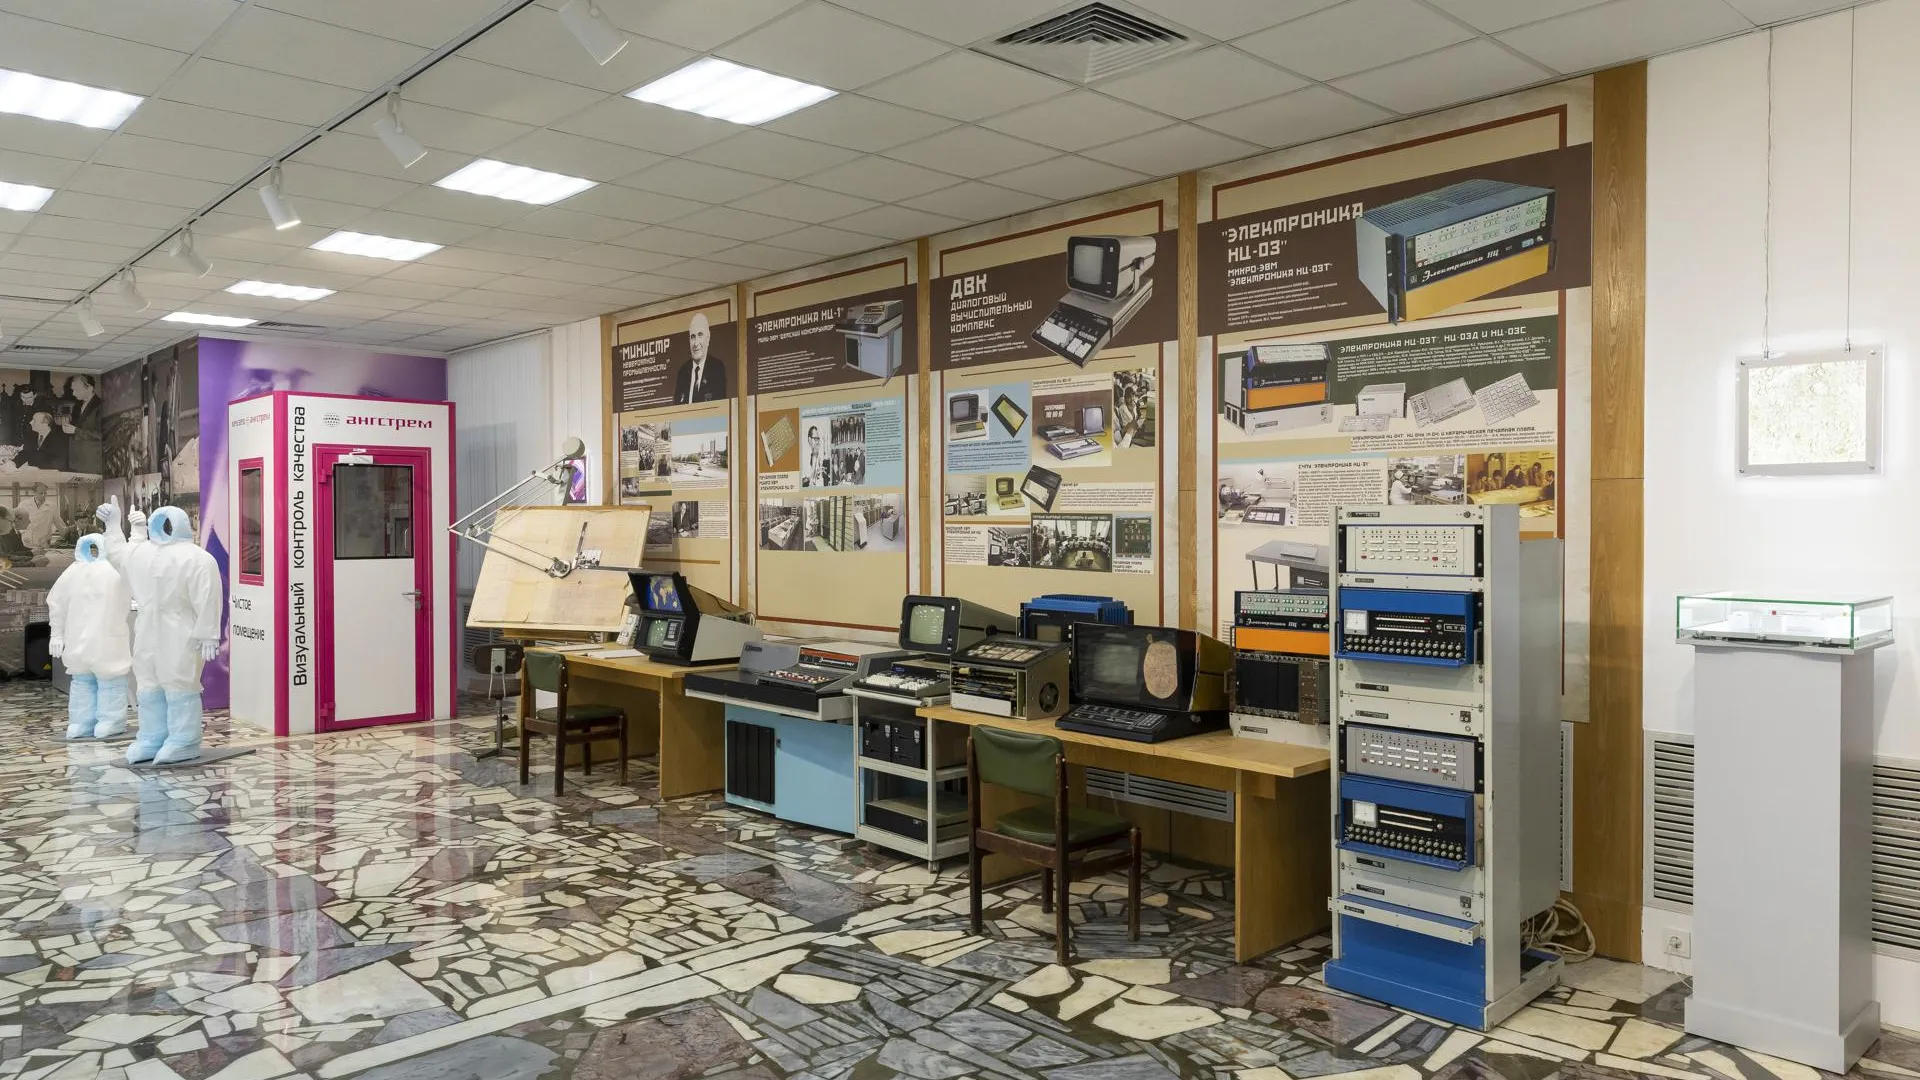 Музей отечественной микроэлектроники открылся в ОЭЗ «Технополис Москва»